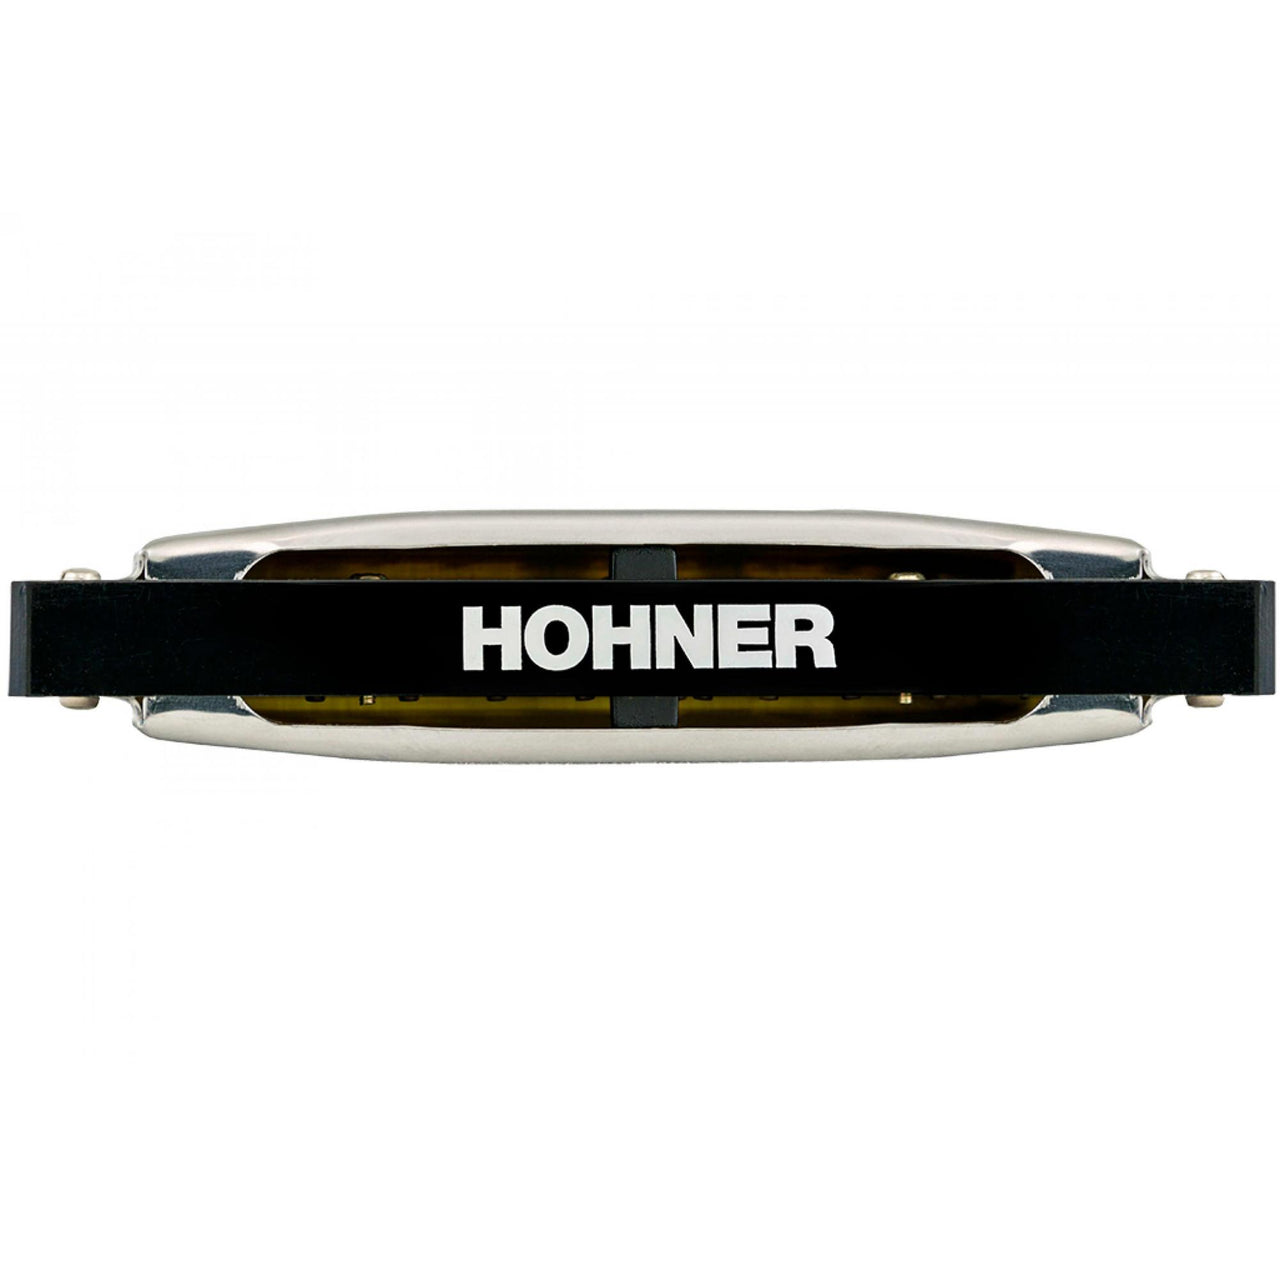 Armonica Hohner M5040167 Silver Star Do 20v